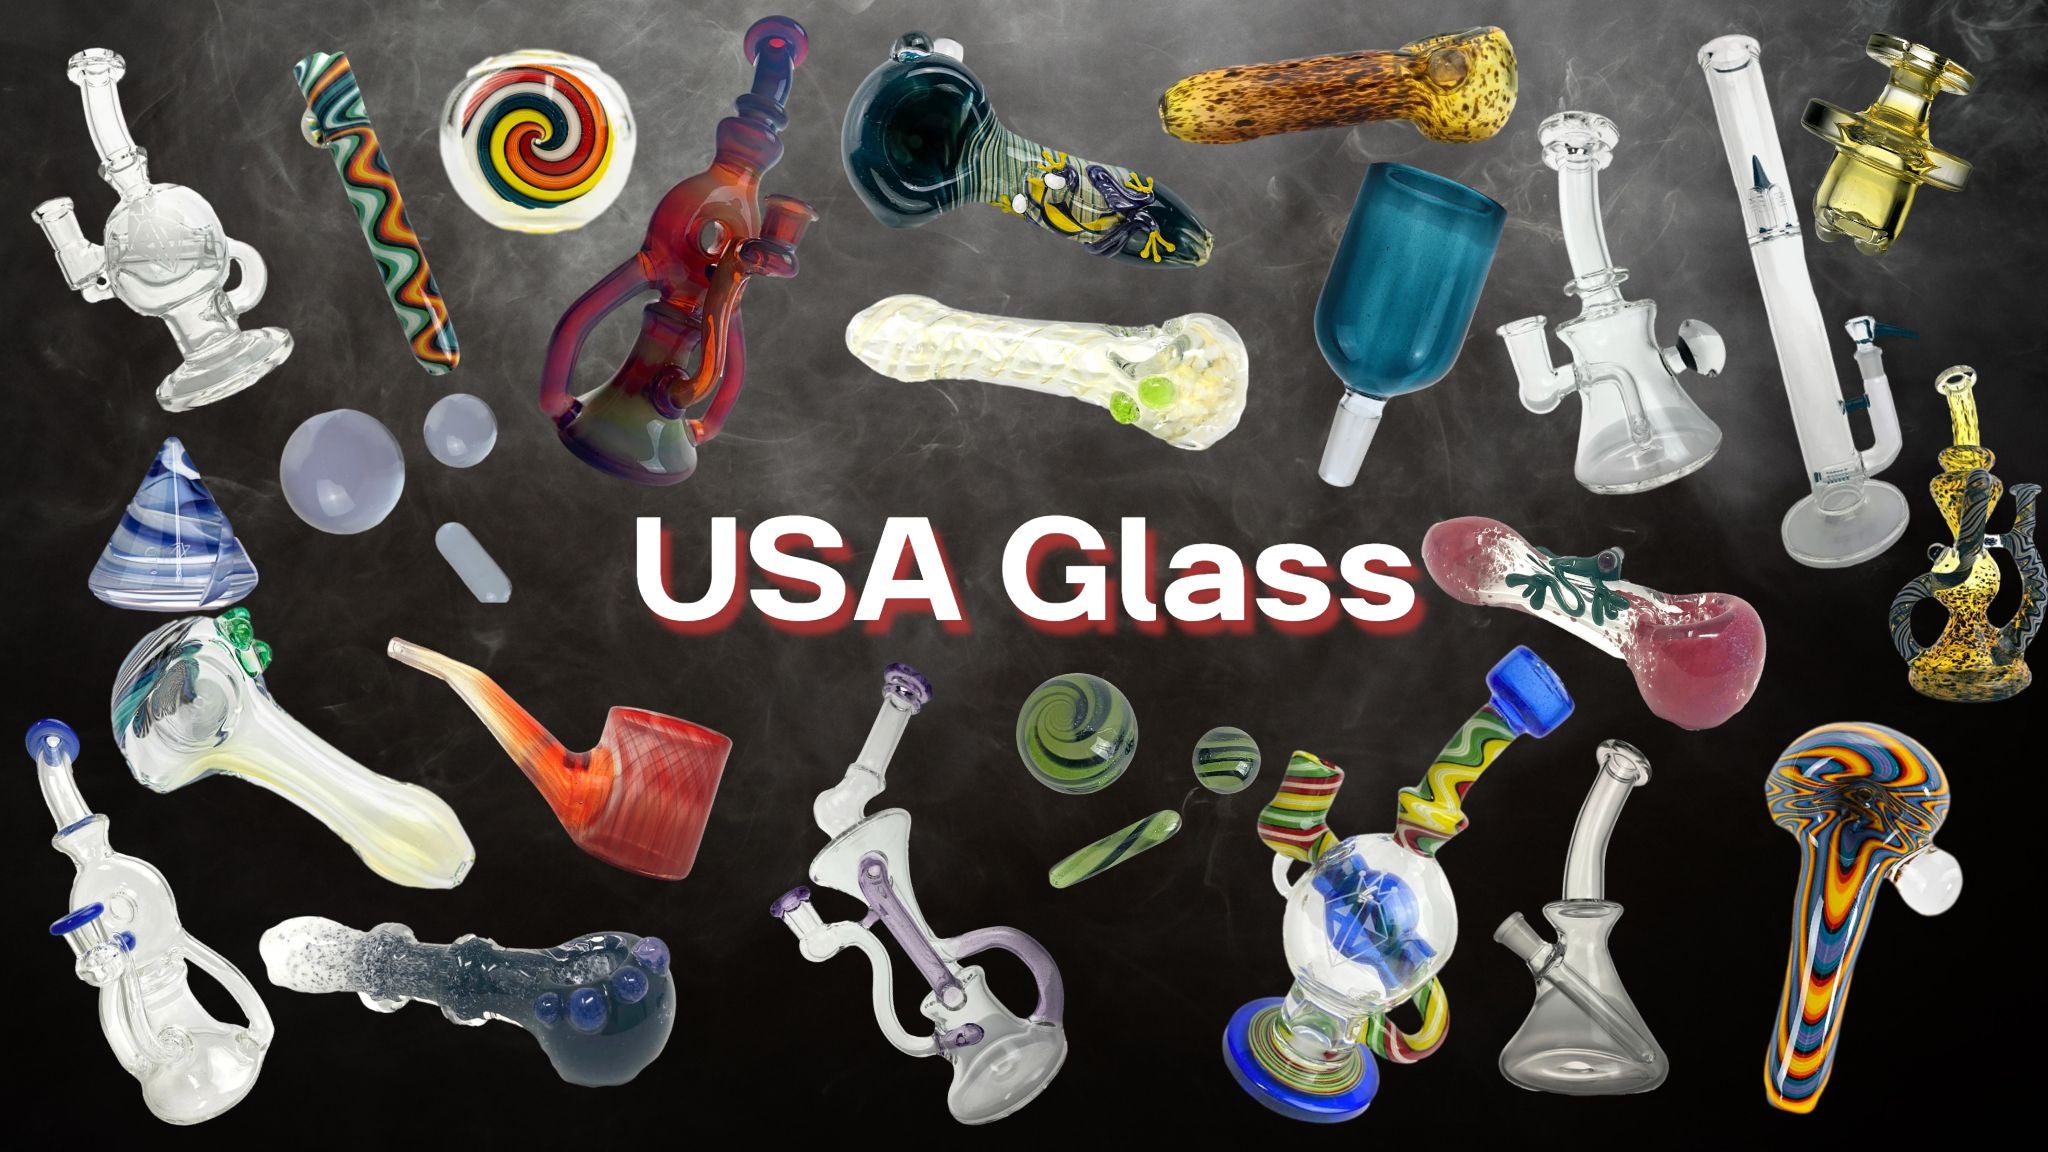 USA Glass